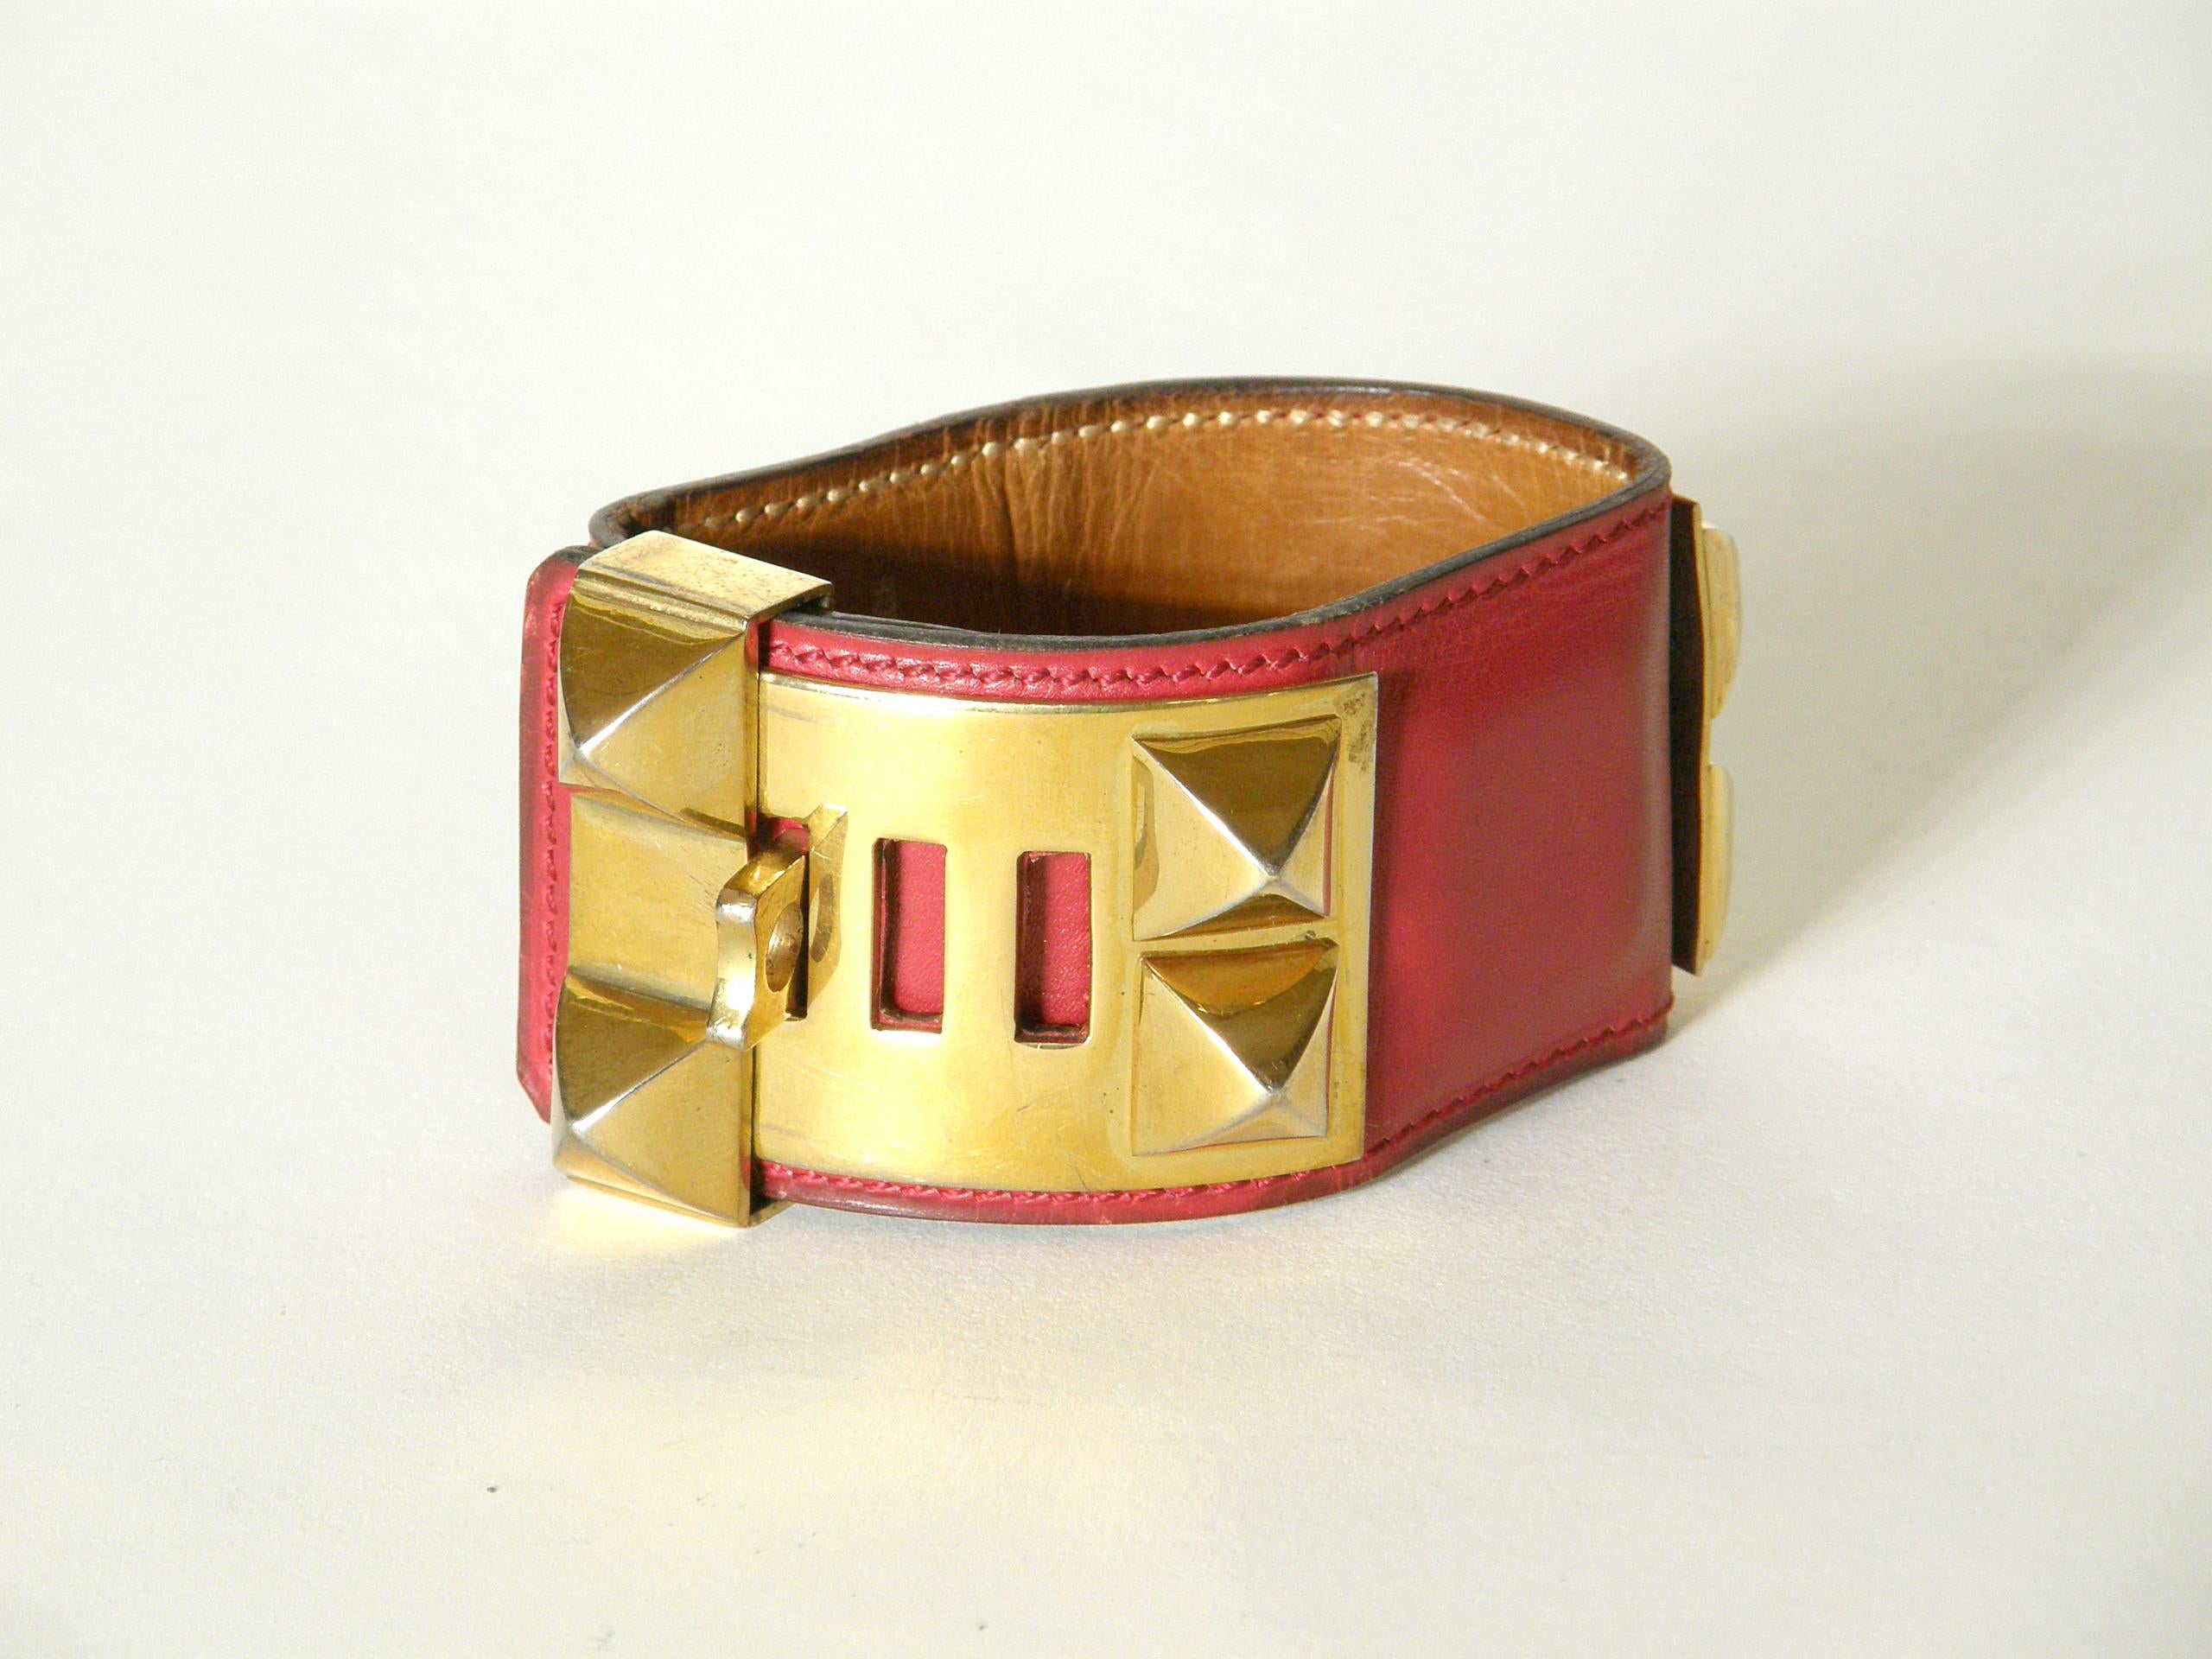 Cet emblématique bracelet manchette Collier de Chien d'Hermès est réalisé en cuir rouge à lèvres avec des éléments plaqués or. Ce design classique a été adapté d'un collier pour chien conçu sur mesure pour un client privé d'Hermès en 1923. En raison